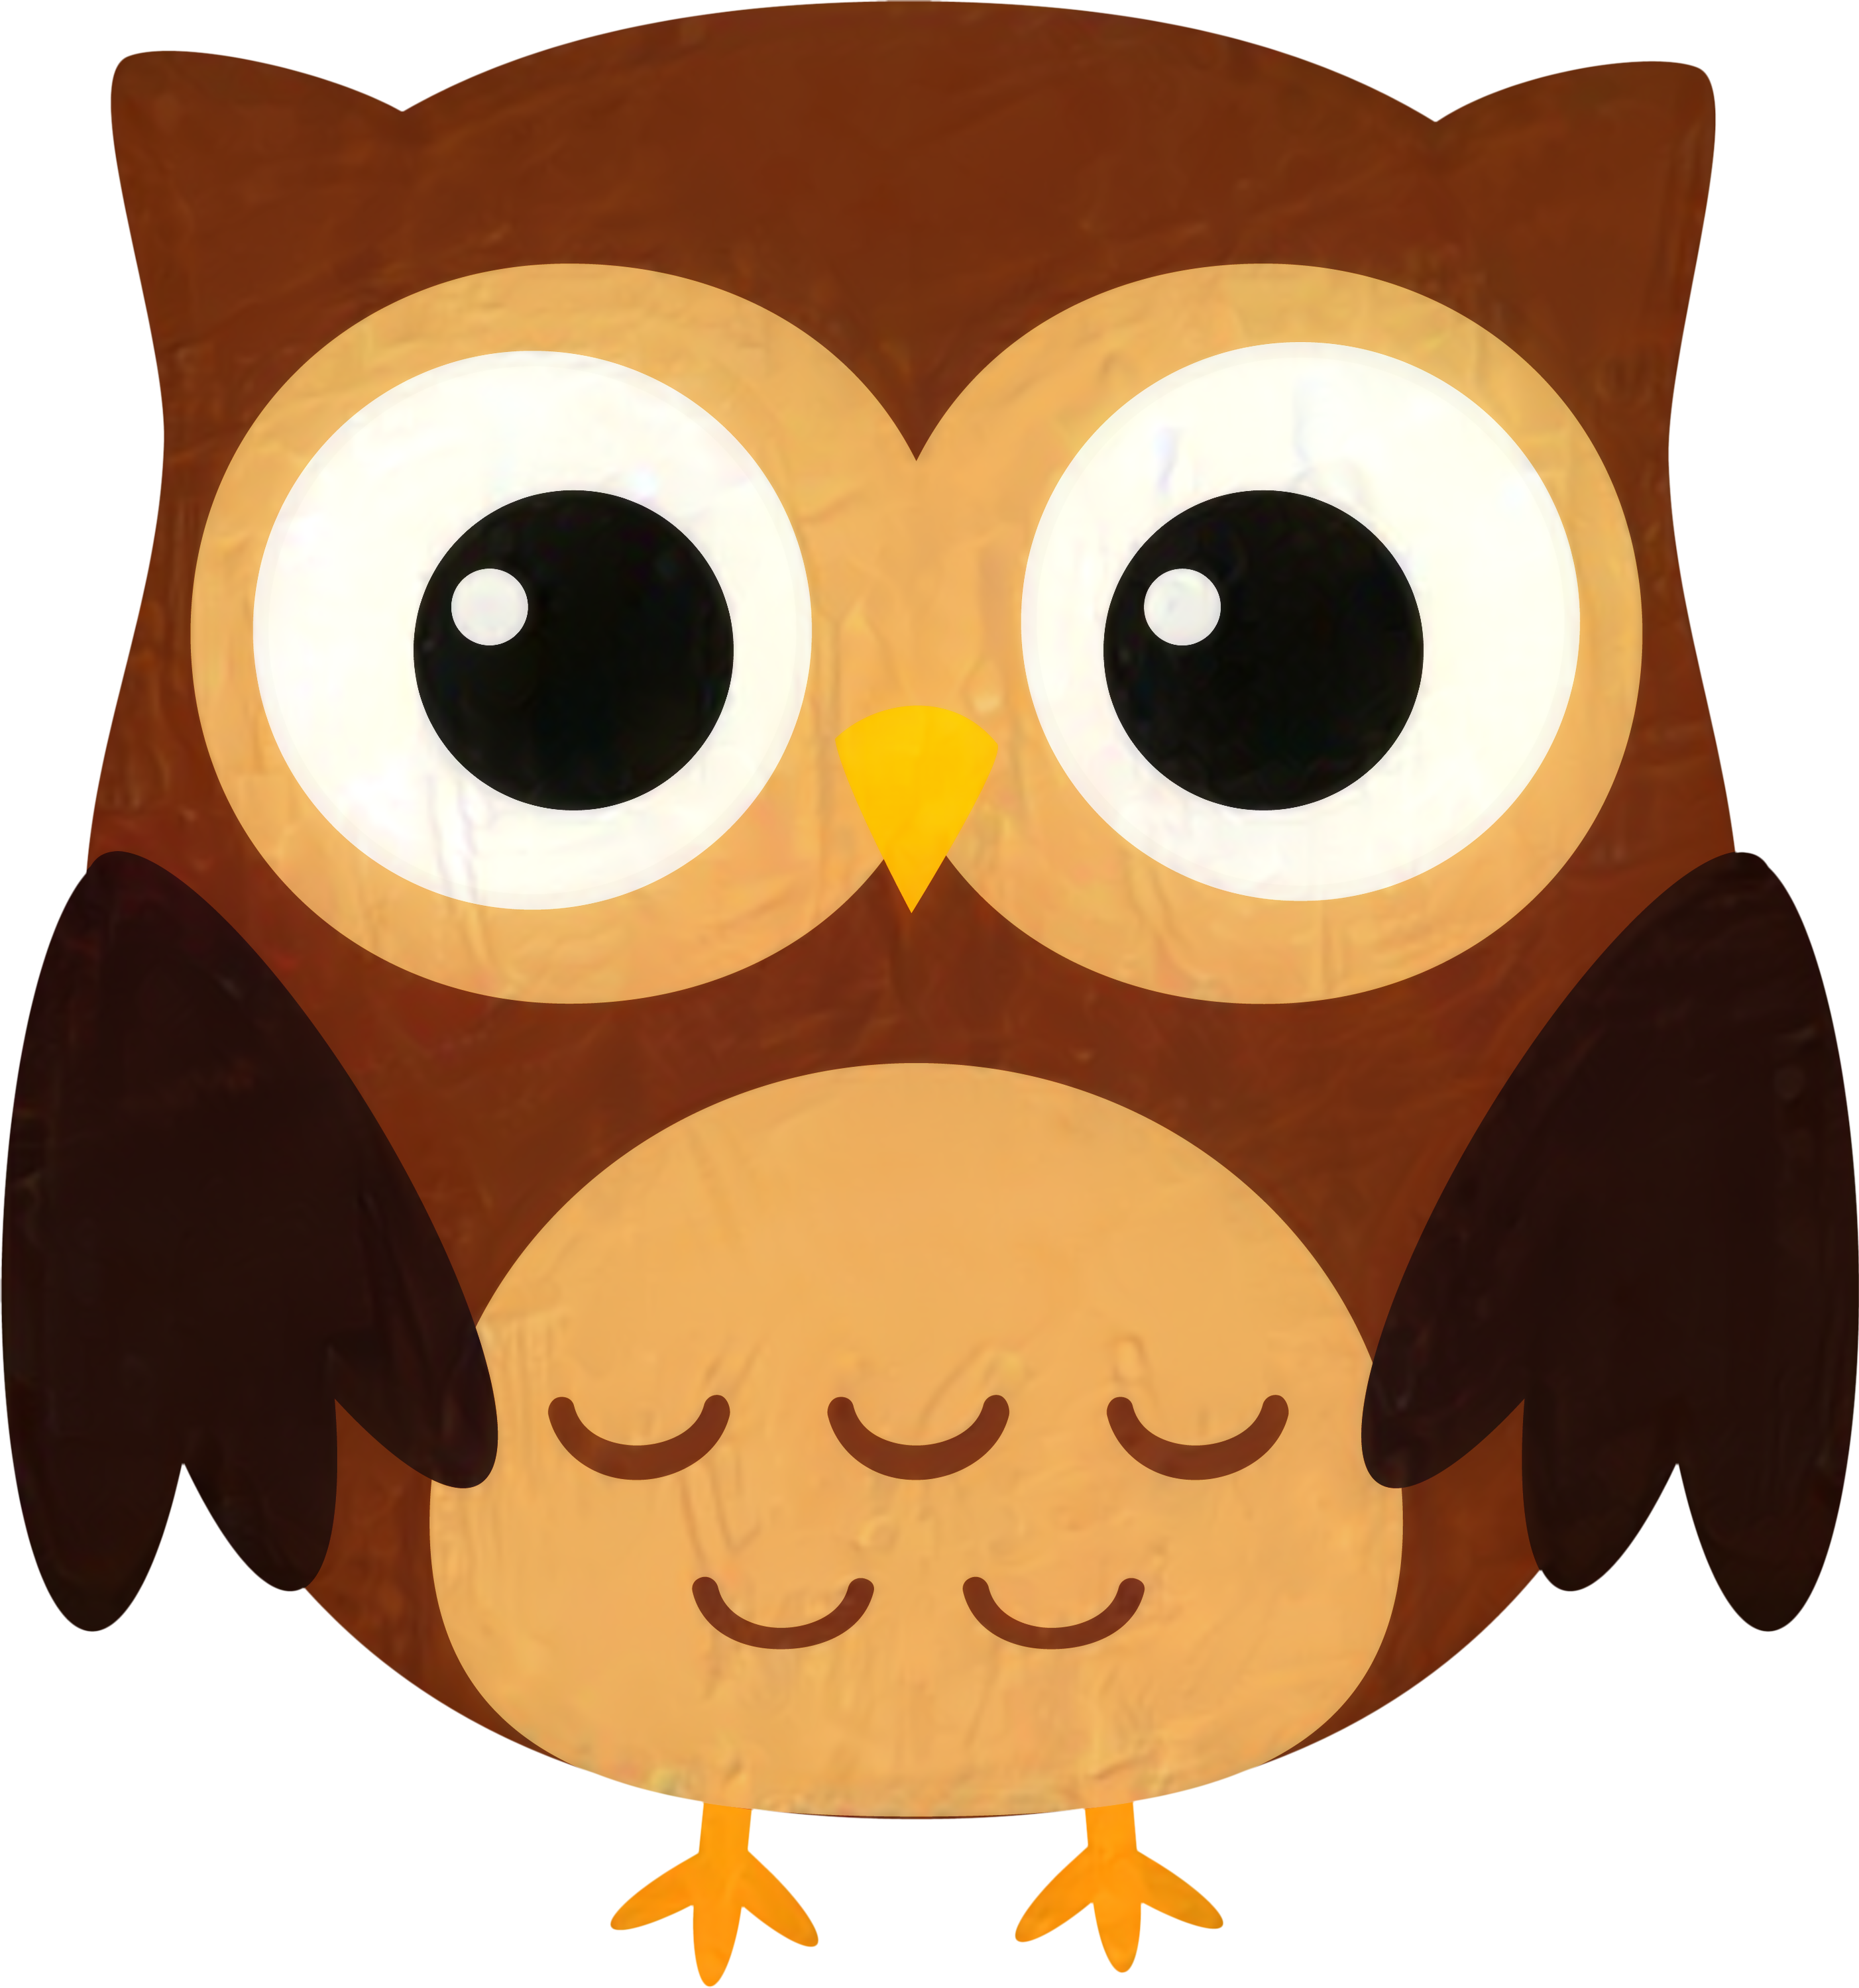 a small cartoon owl